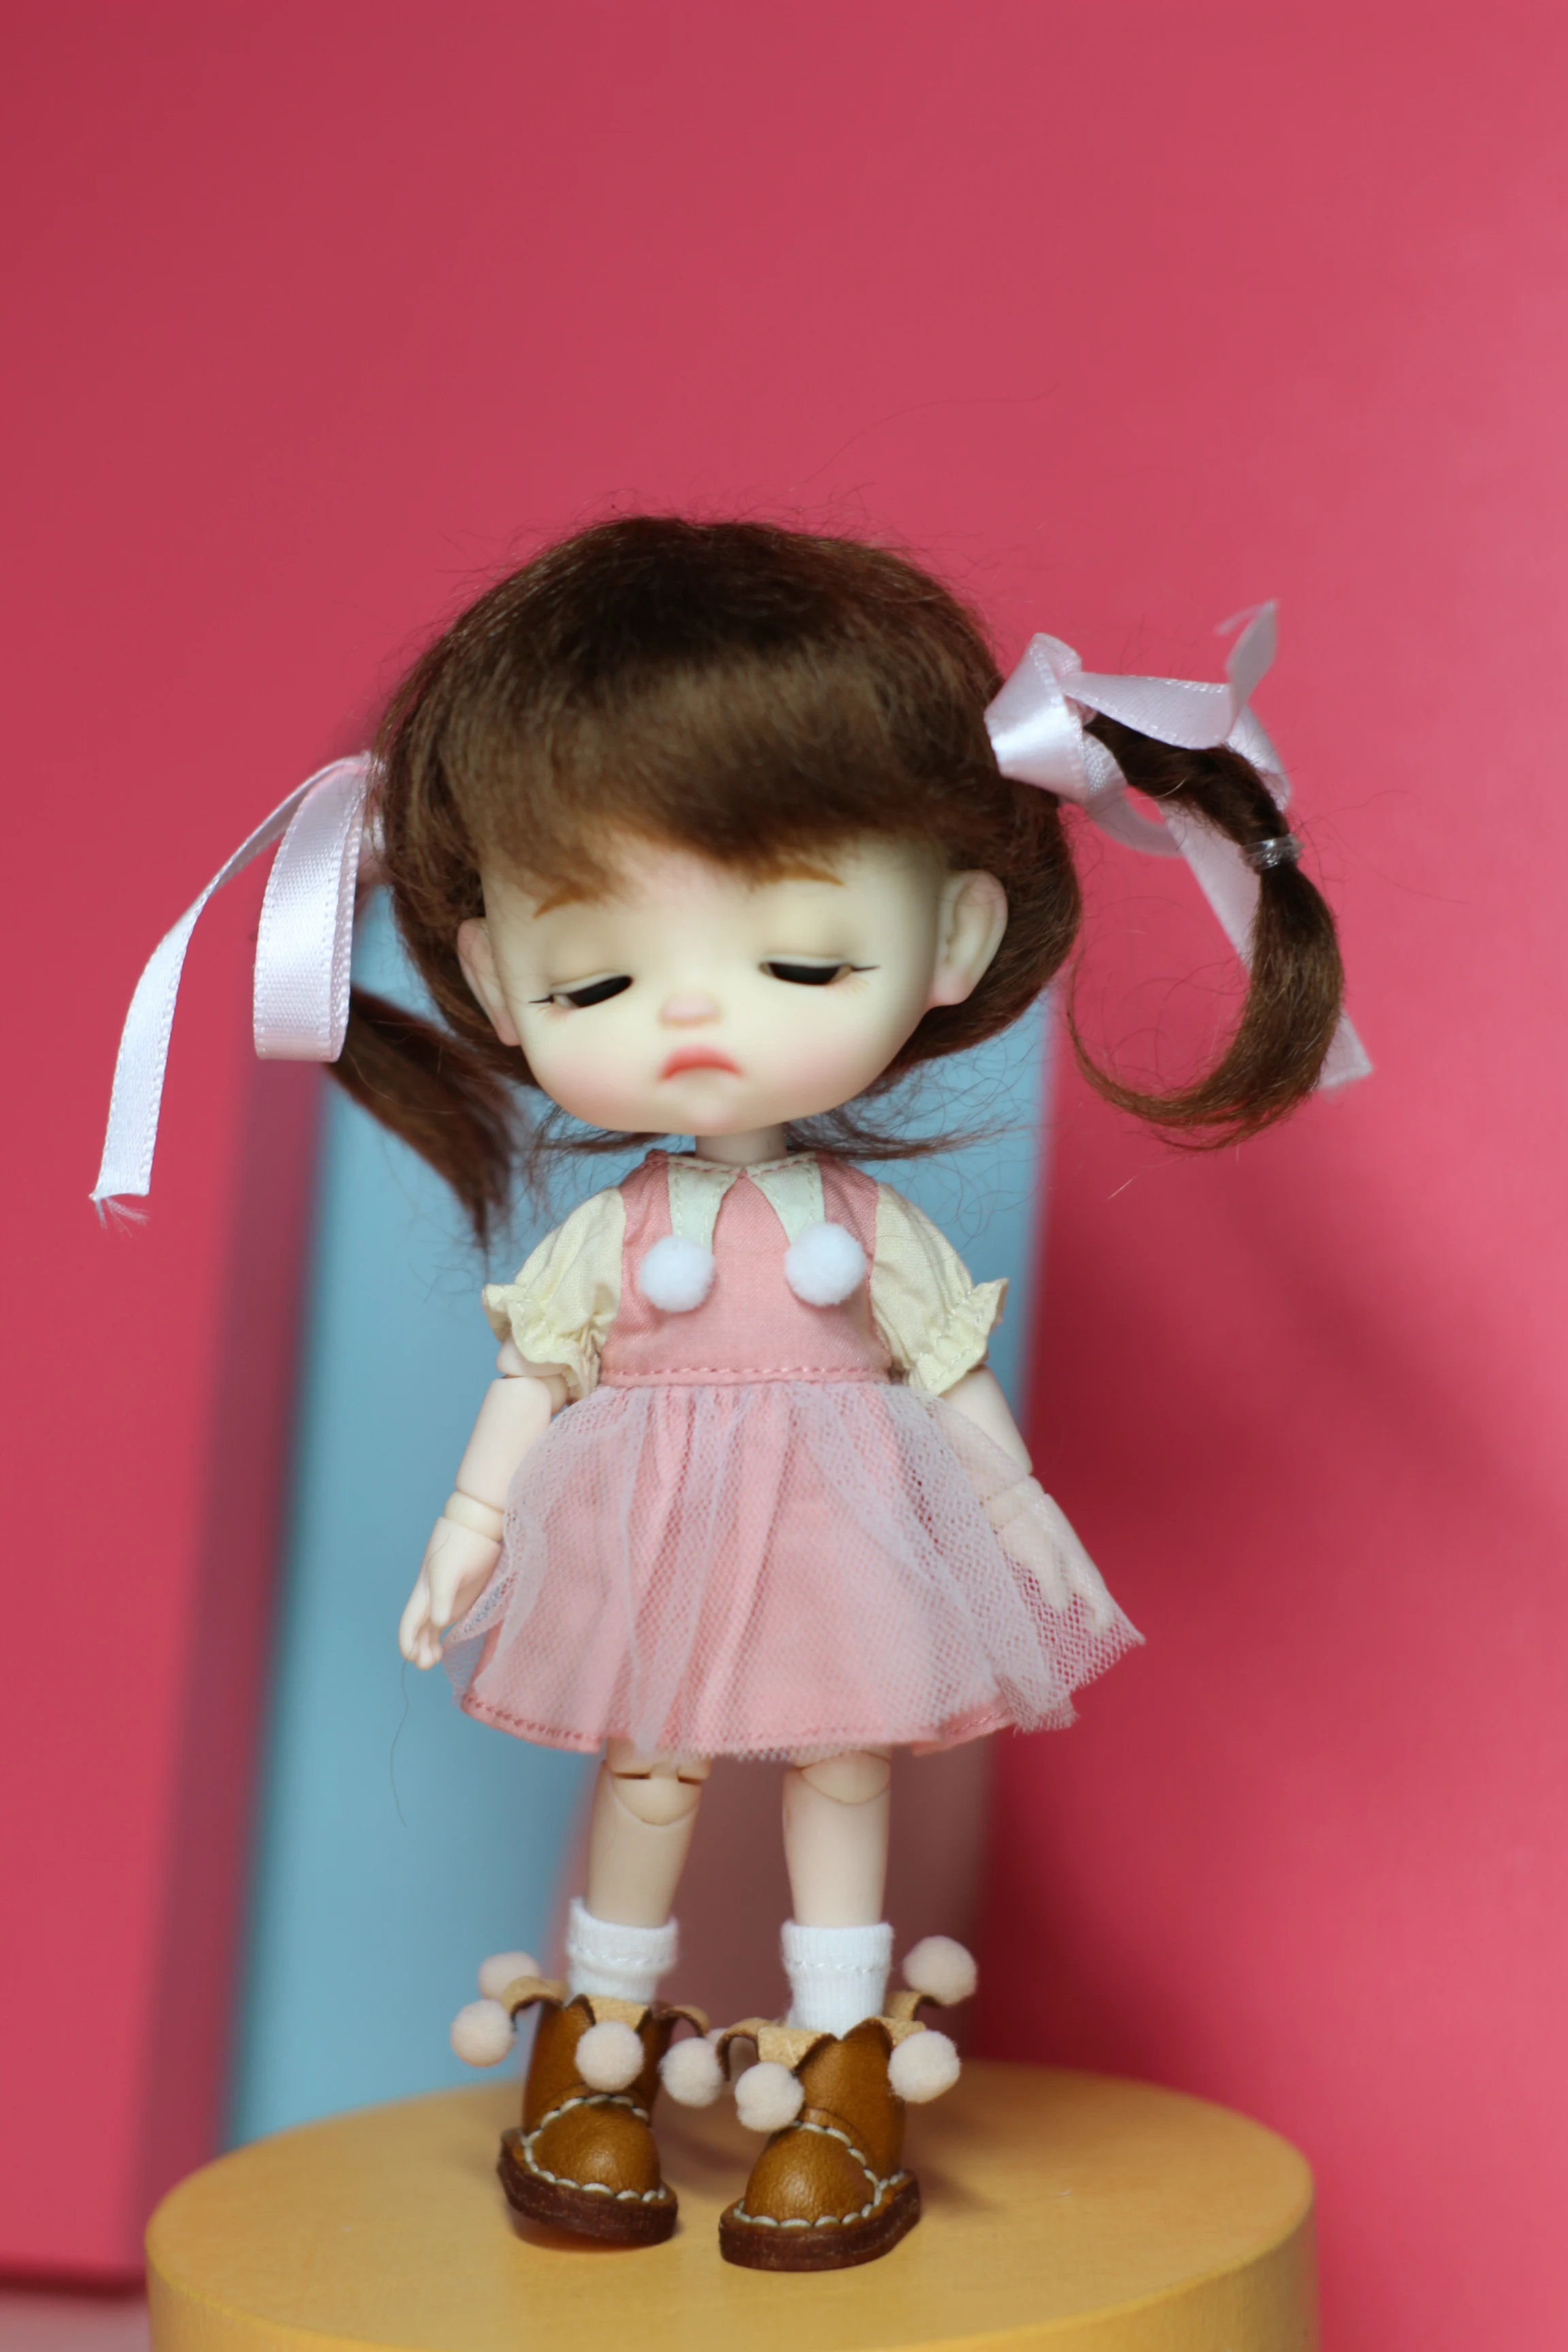 

Кукла OB11 с макияжем, официальное косметическое яйцо для сна 1/12 1/8, детская голова bjd, включая кукольную голову и парик, одежду, обувь и тело